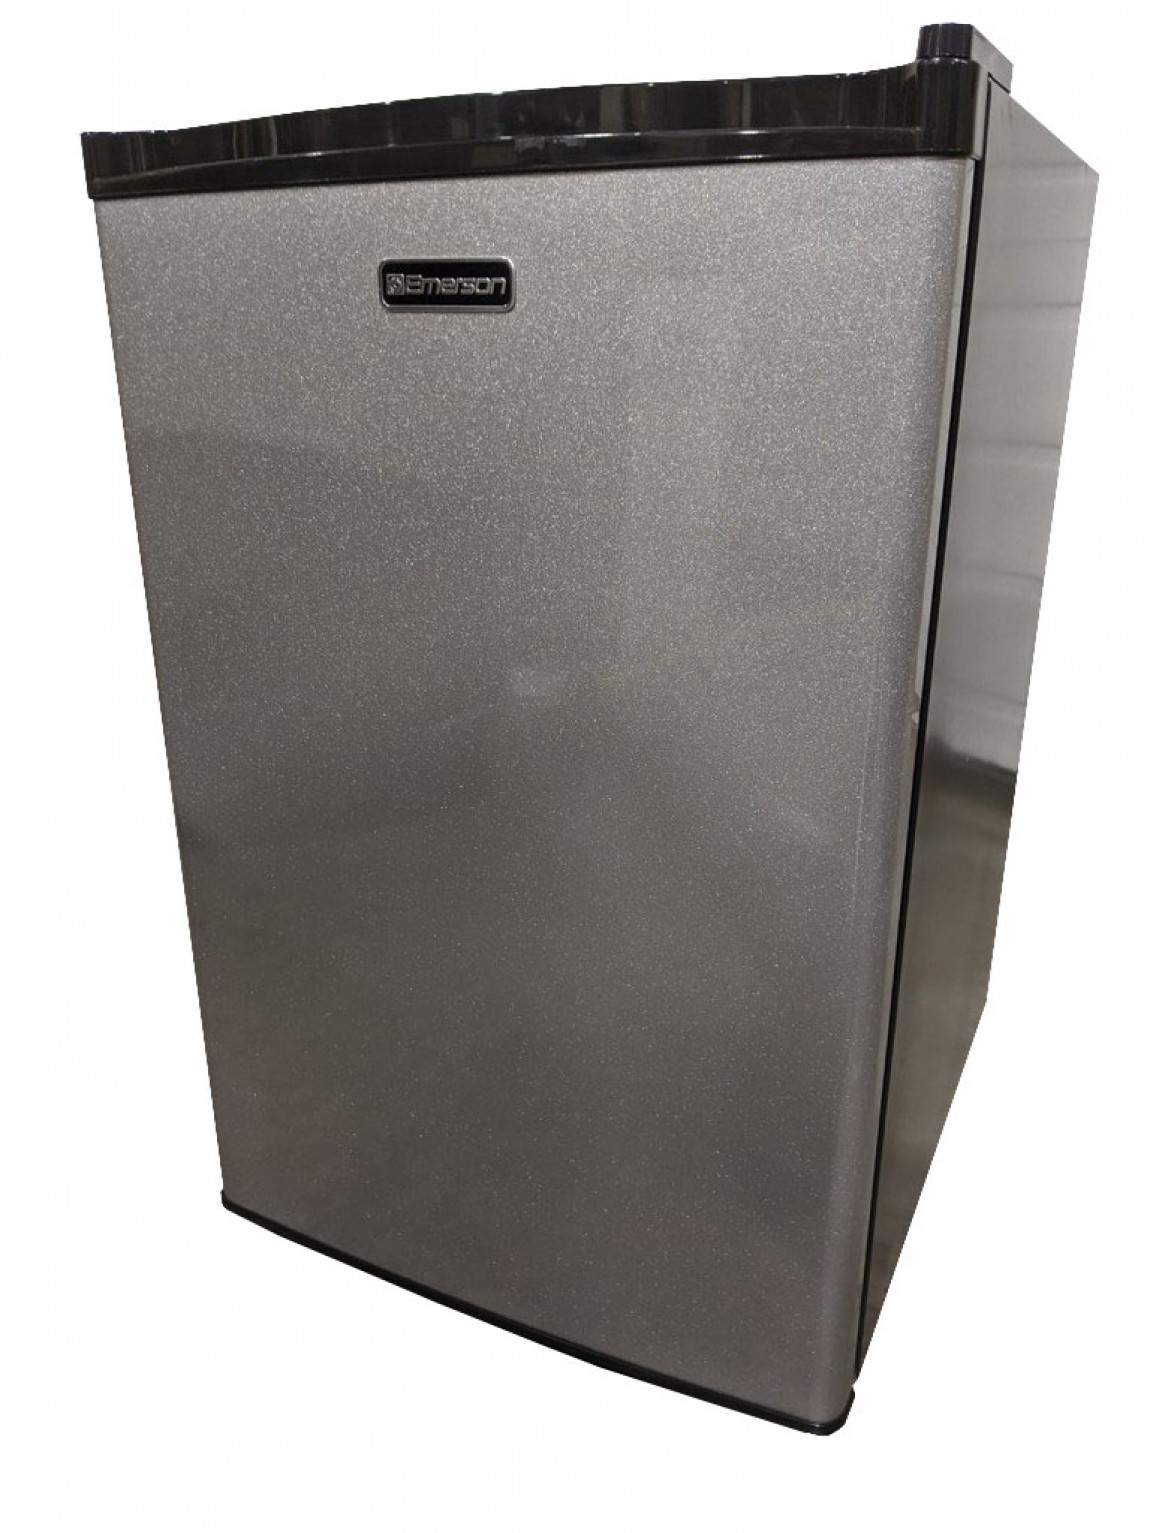 Emerson Mini Refrigerator